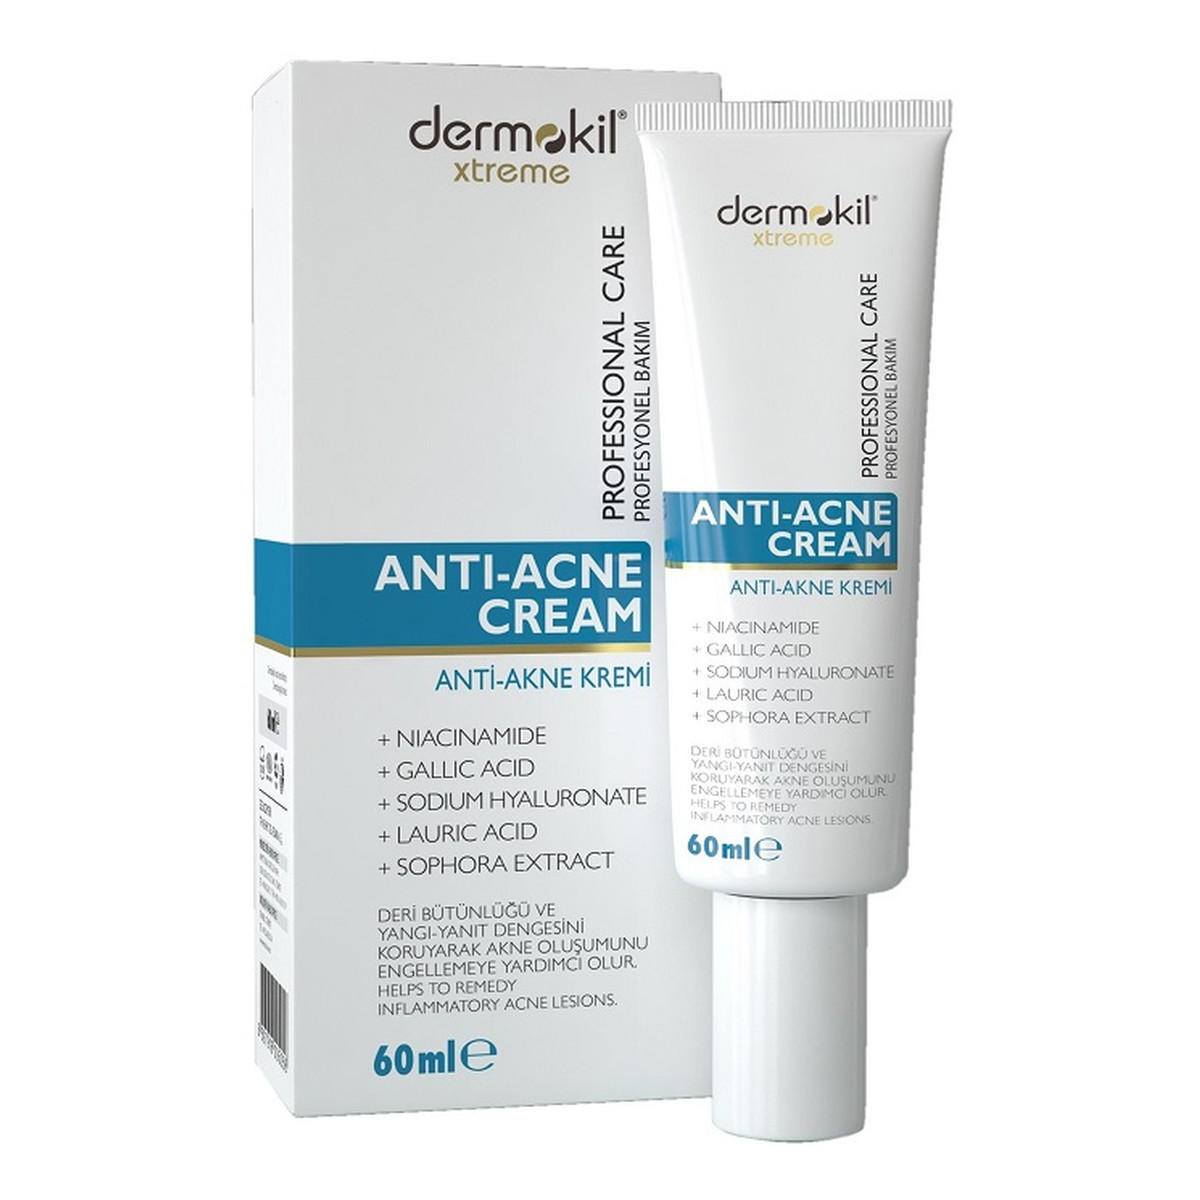 Dermokil Xtreme Anti-Acne Cream przeciwtrądzikowy Krem do twarzy 60ml